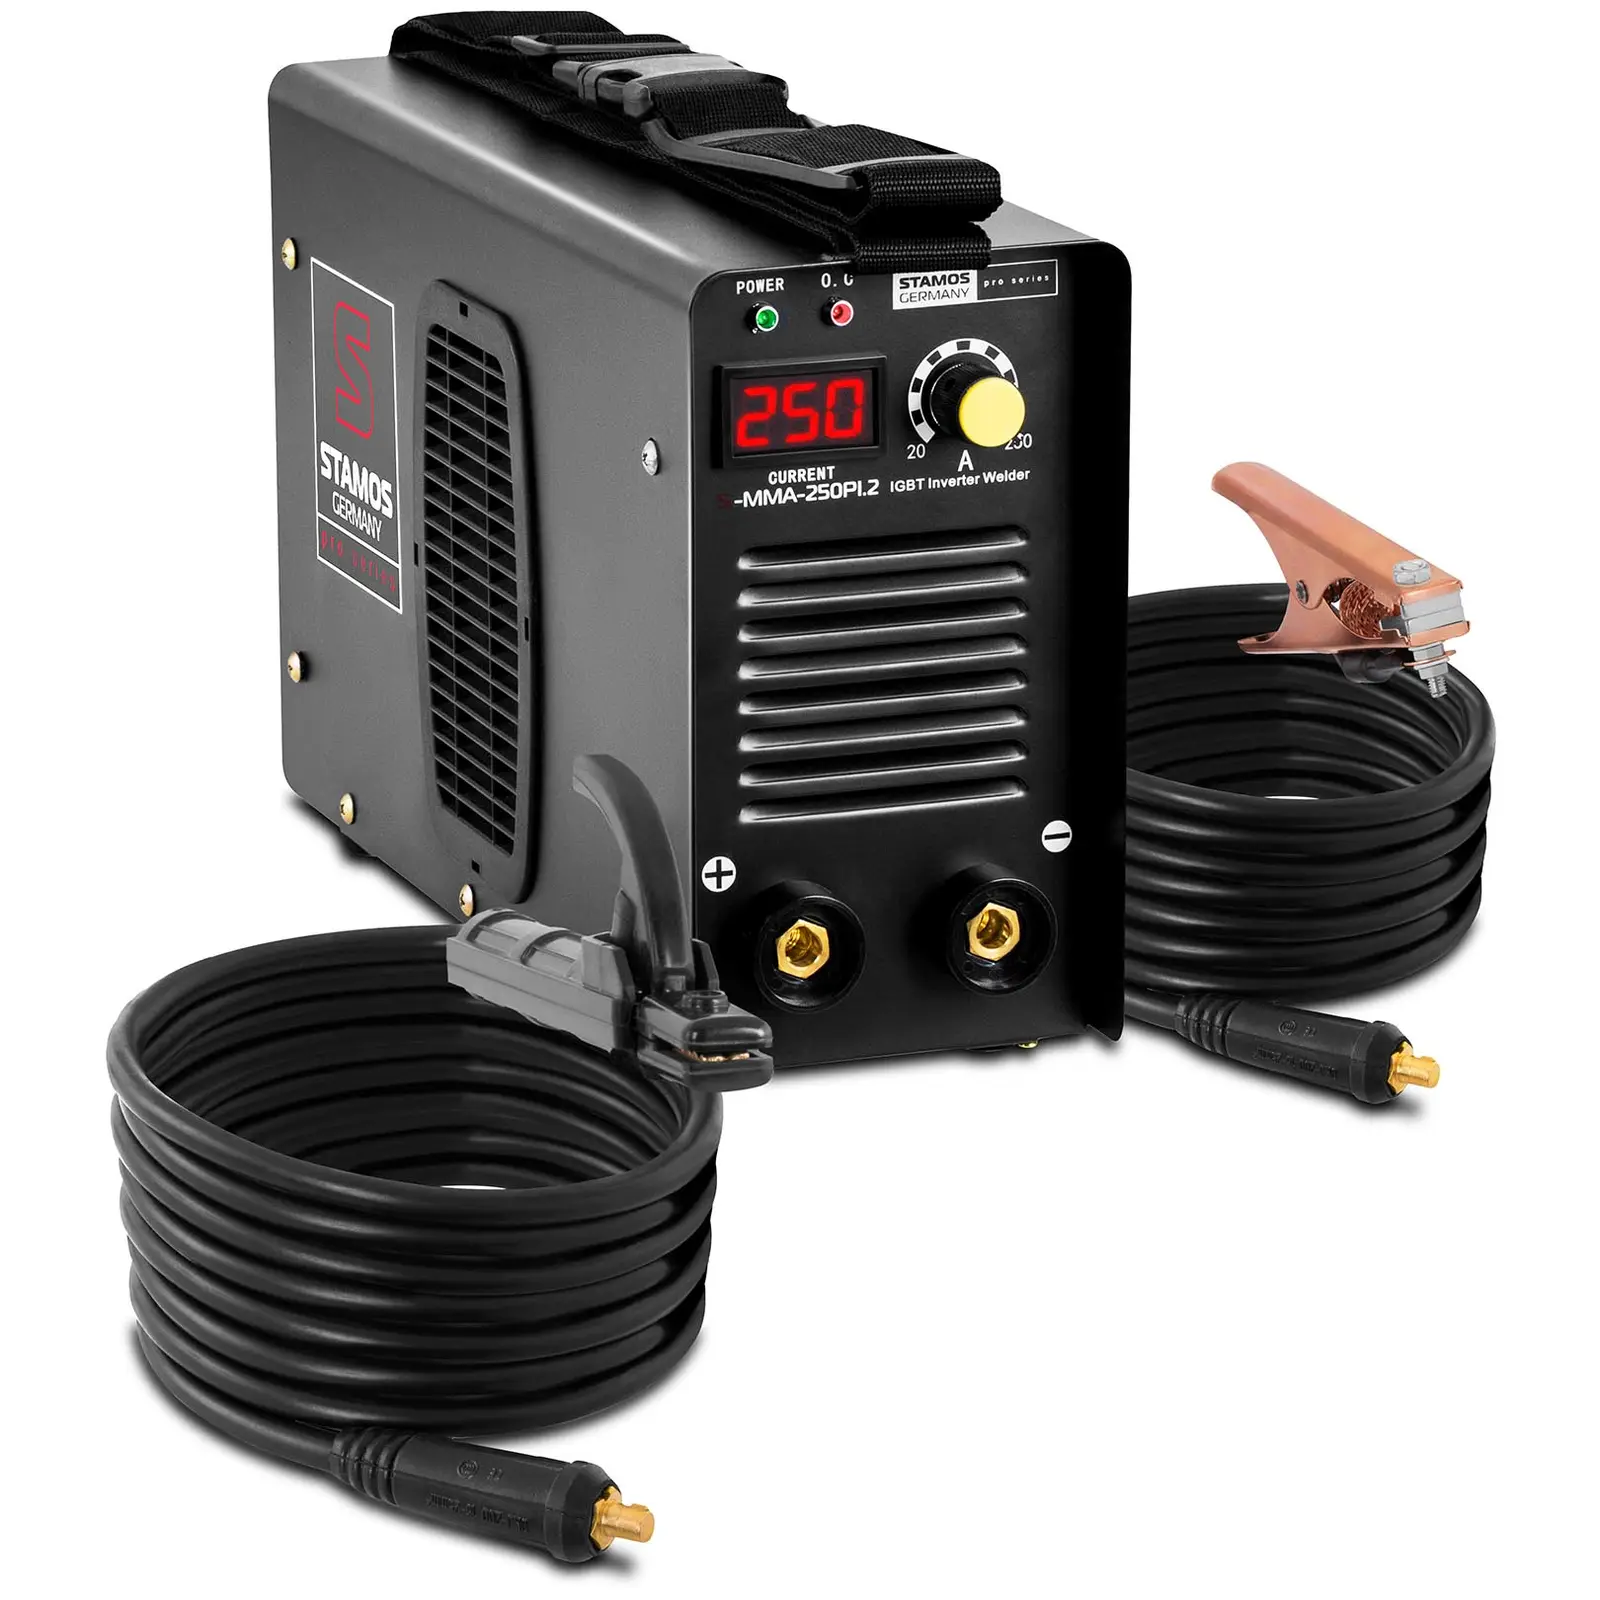 Elektrodová svářečka - 250 A - 8m kabel - Hot Start - PRO